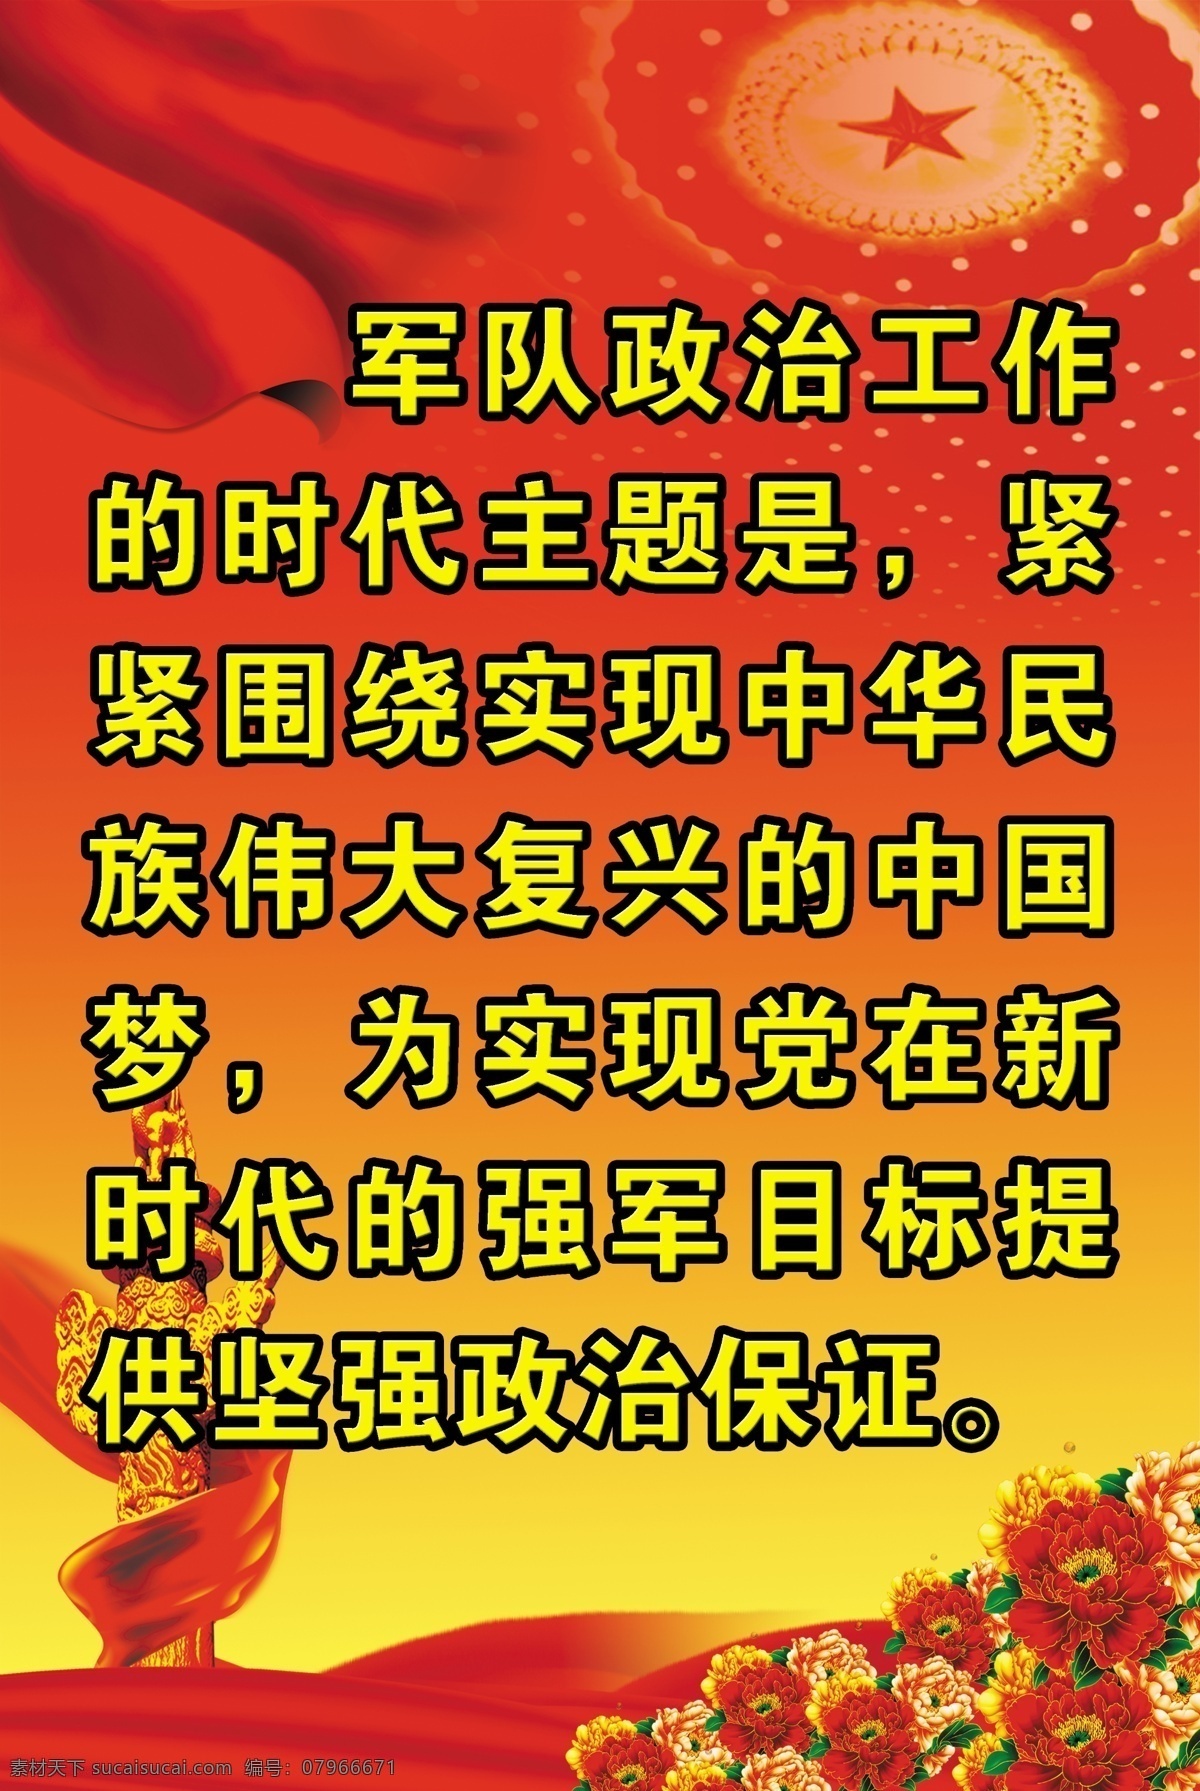 强军 红色底色 军队政治工作 中国梦 伟大复兴 新时代 室内广告设计